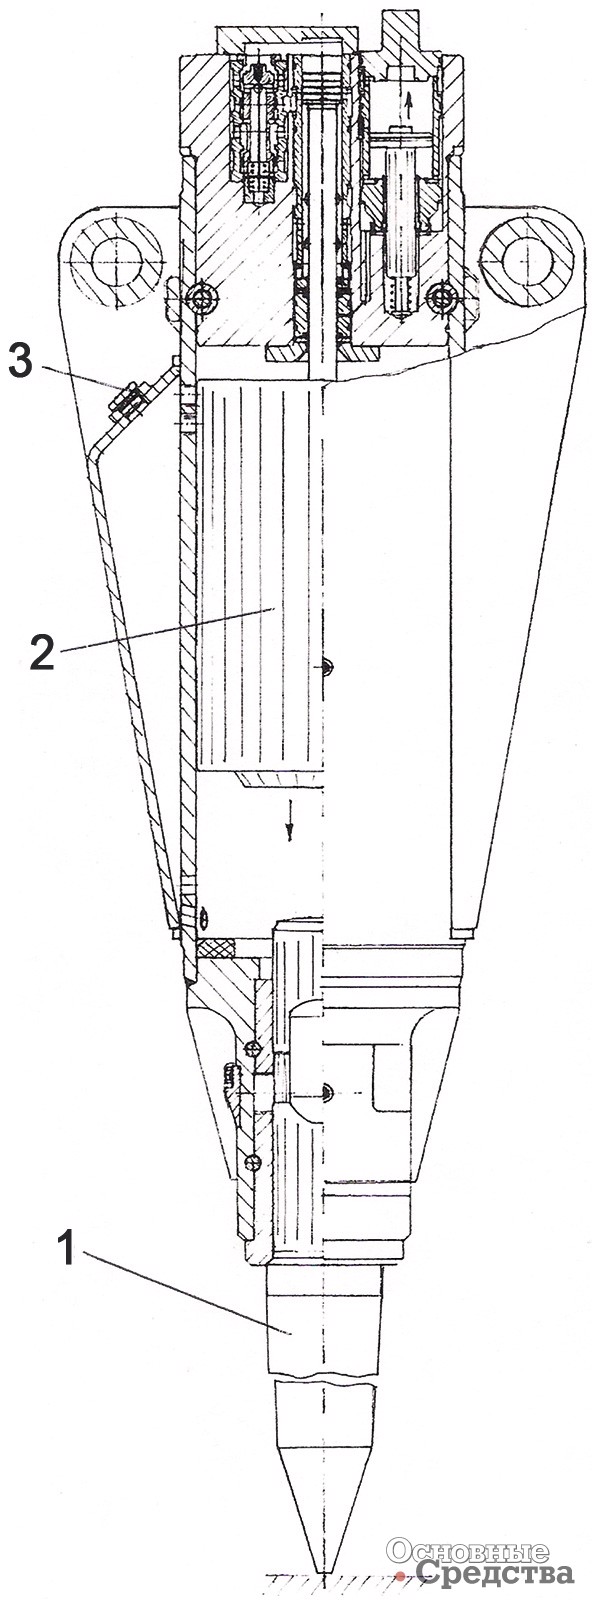 Рис. 5. [b]Компоновка гидромолотов Д550, Д600, Д800:[/b] 1 – сменный инструмент; 2 – боек; 3 – место присоединения шланга для подачи сжатого воздуха